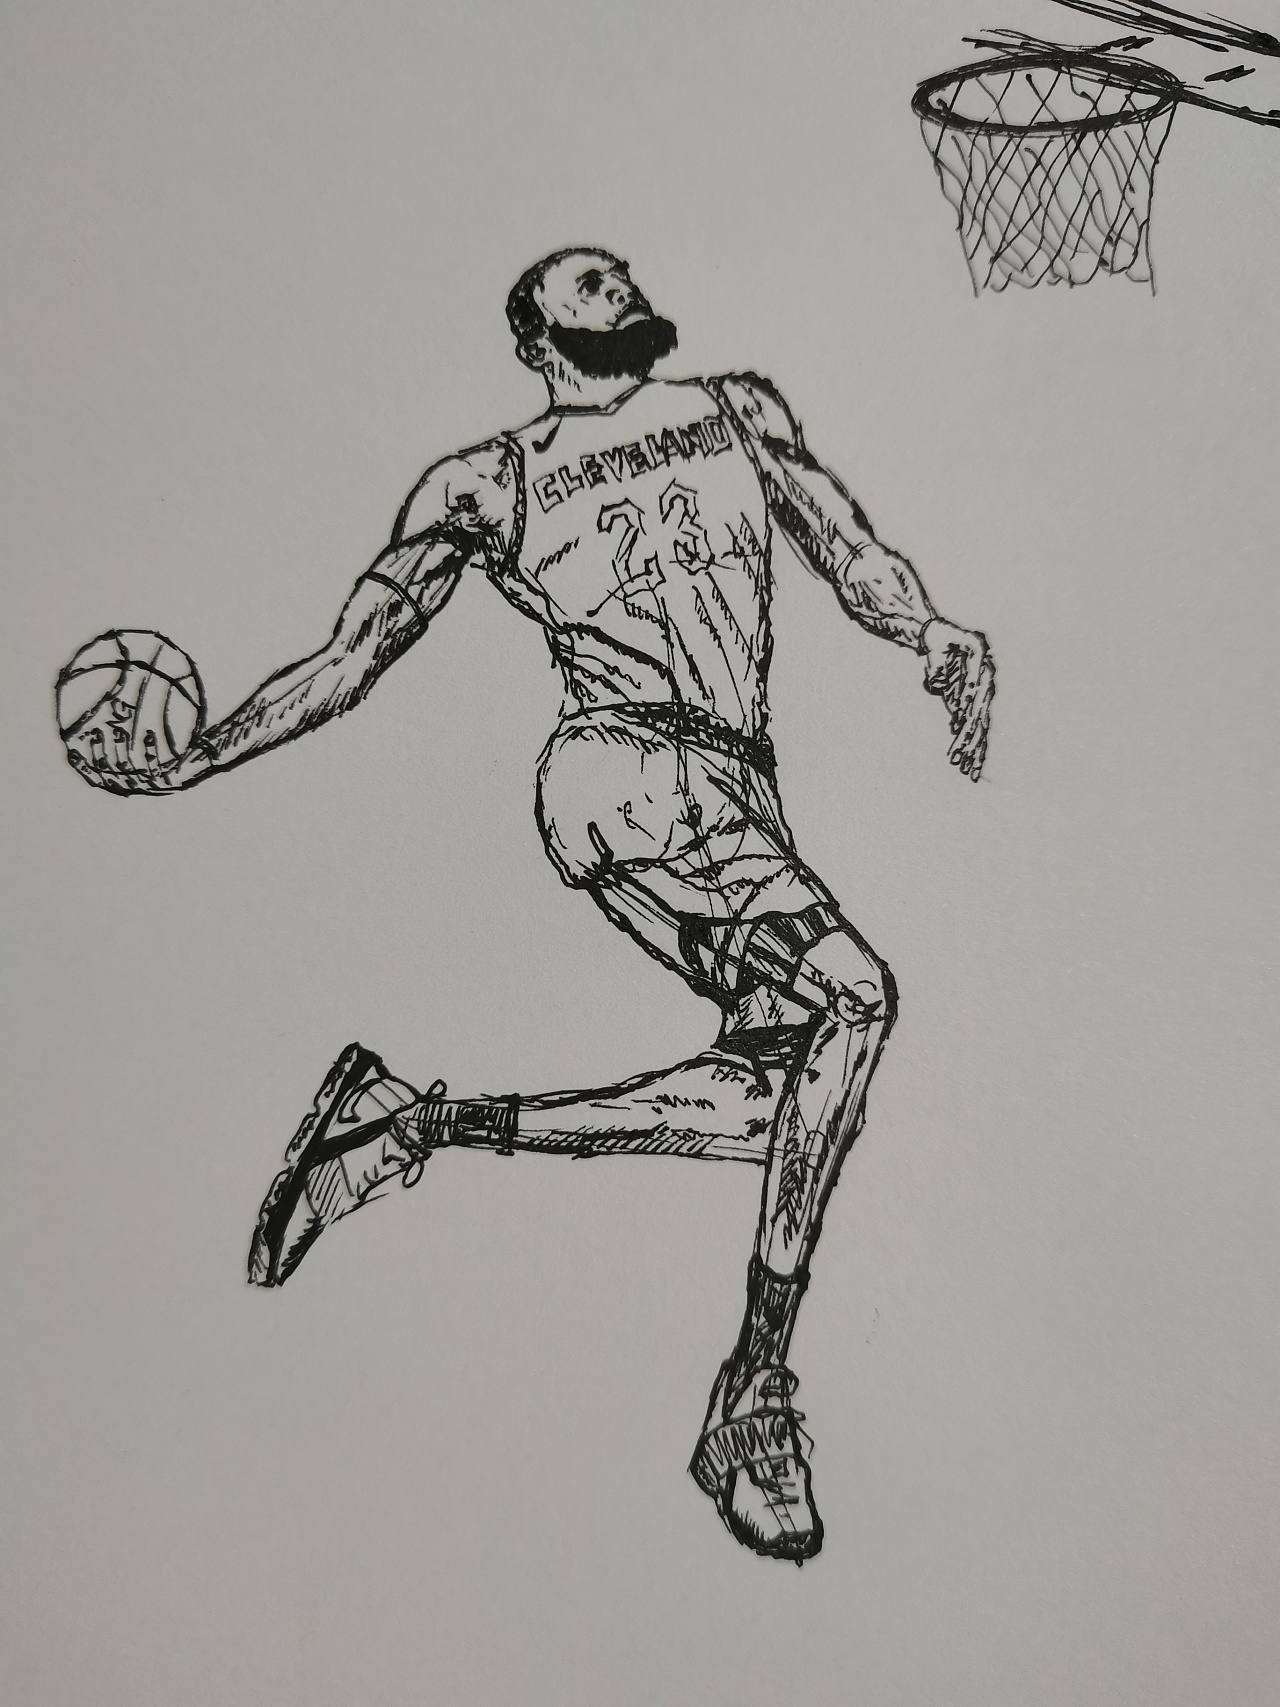 詹姆斯简笔画篮球图片